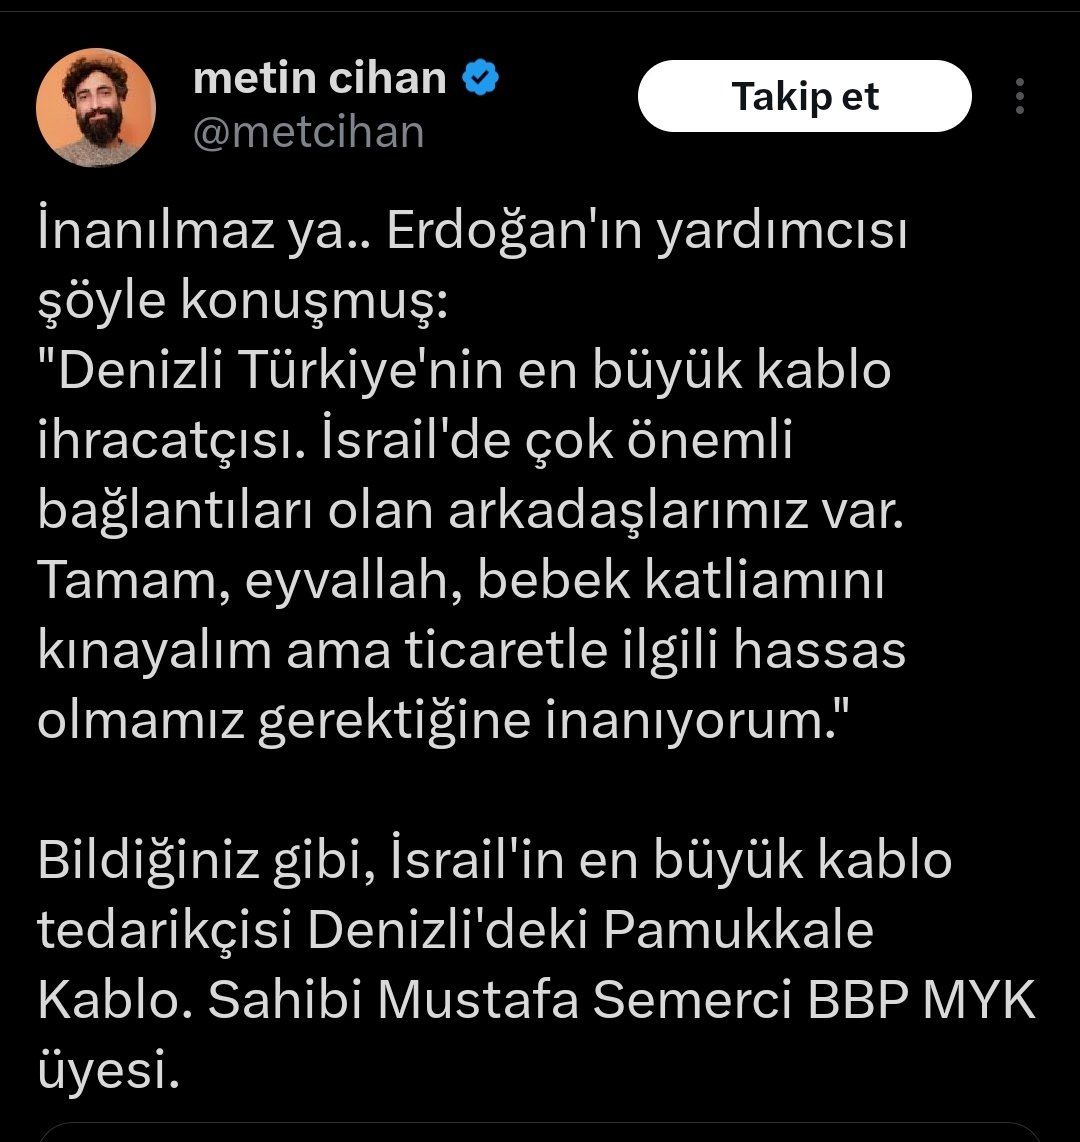 AKP Genel Başkan Yardımcısı Nihat Zeybekçi İsrail ile ticaret ilişkilerini değerlendirdi; 'Katliamı kınıyoruz ama İsrail serbest ticaret anlaşmamızın olduğu bir ülke' dedi.